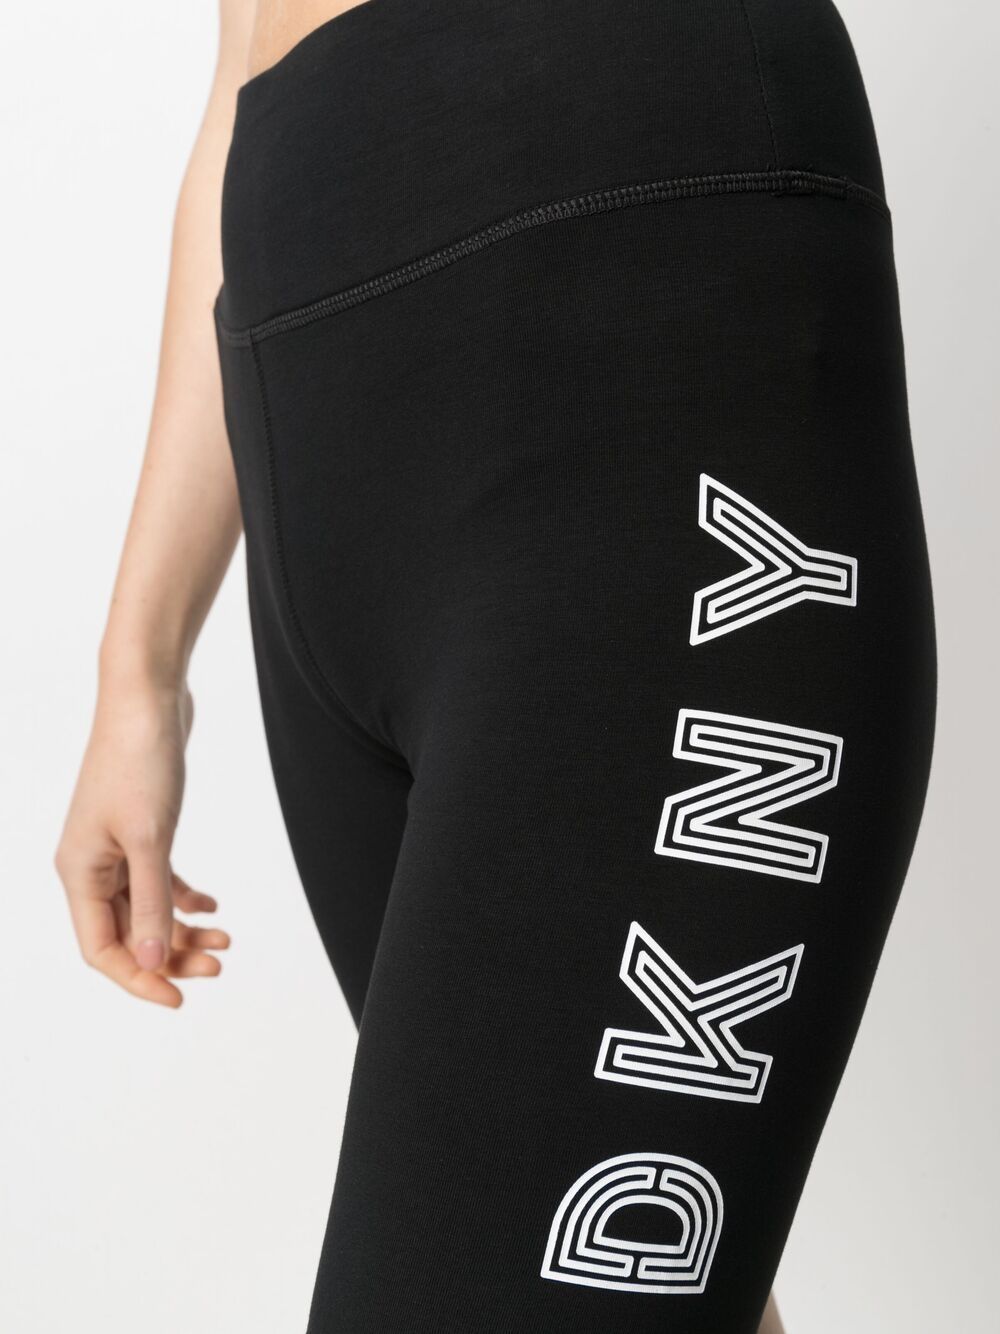 фото Dkny облегающие шорты с логотипом